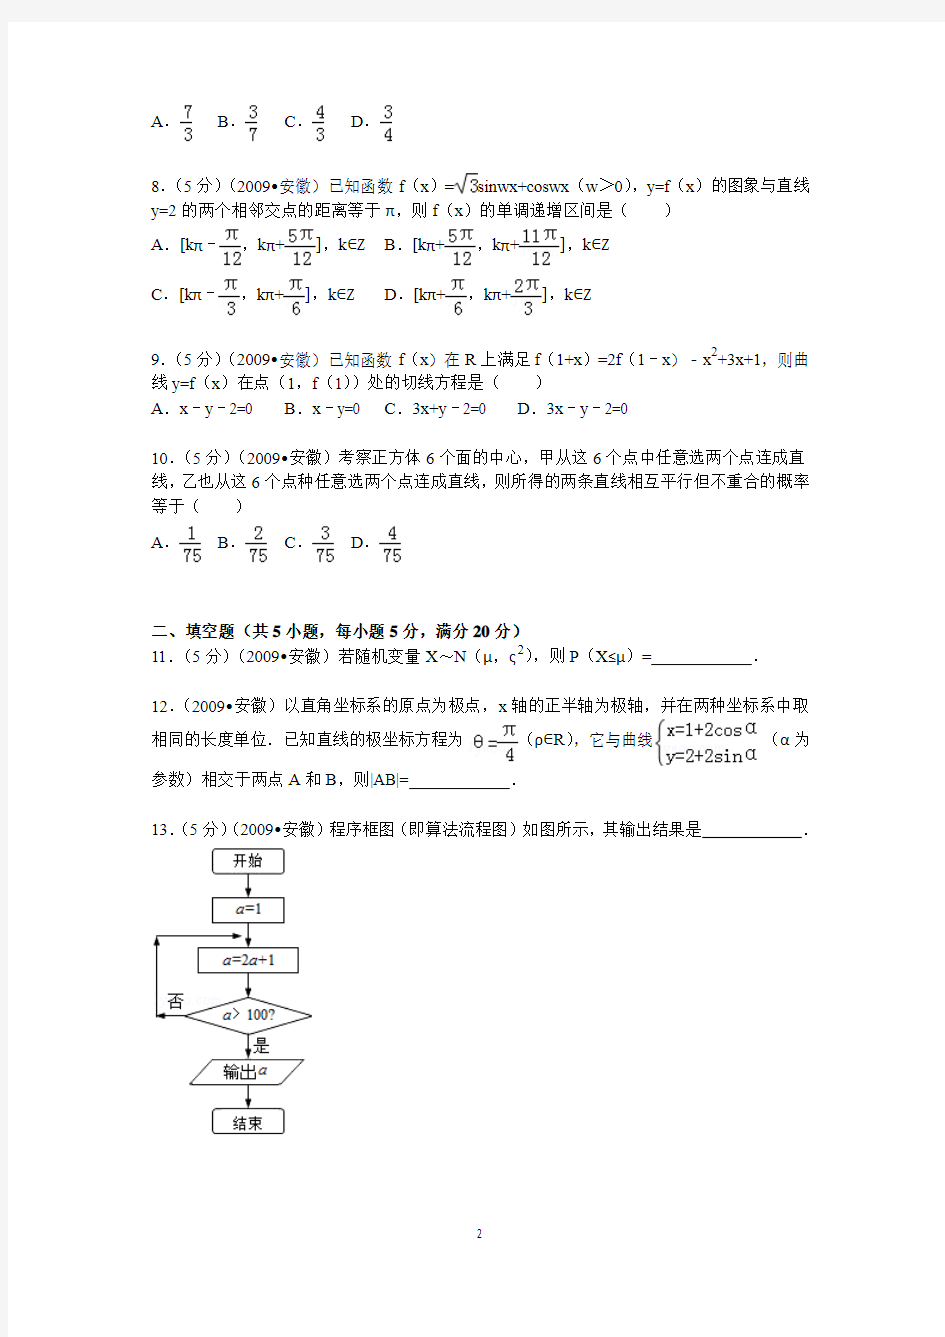 2009年 安徽省高考数学试卷(理科)